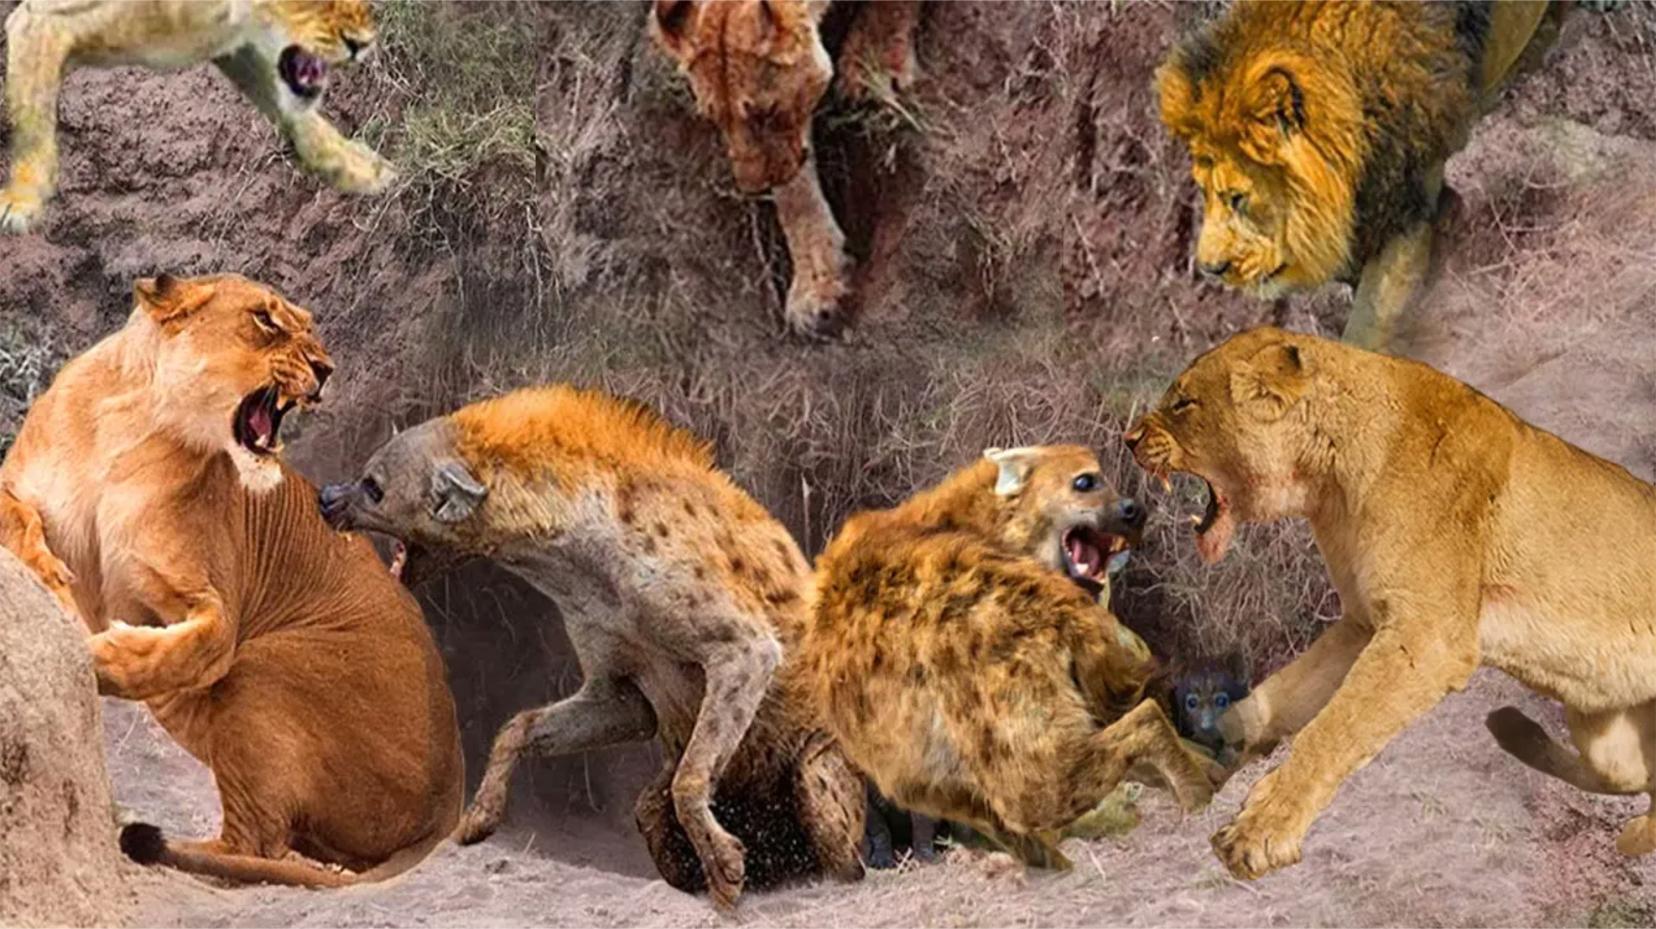 勇敢的鬣狗敢于攻击疯狂的狮子